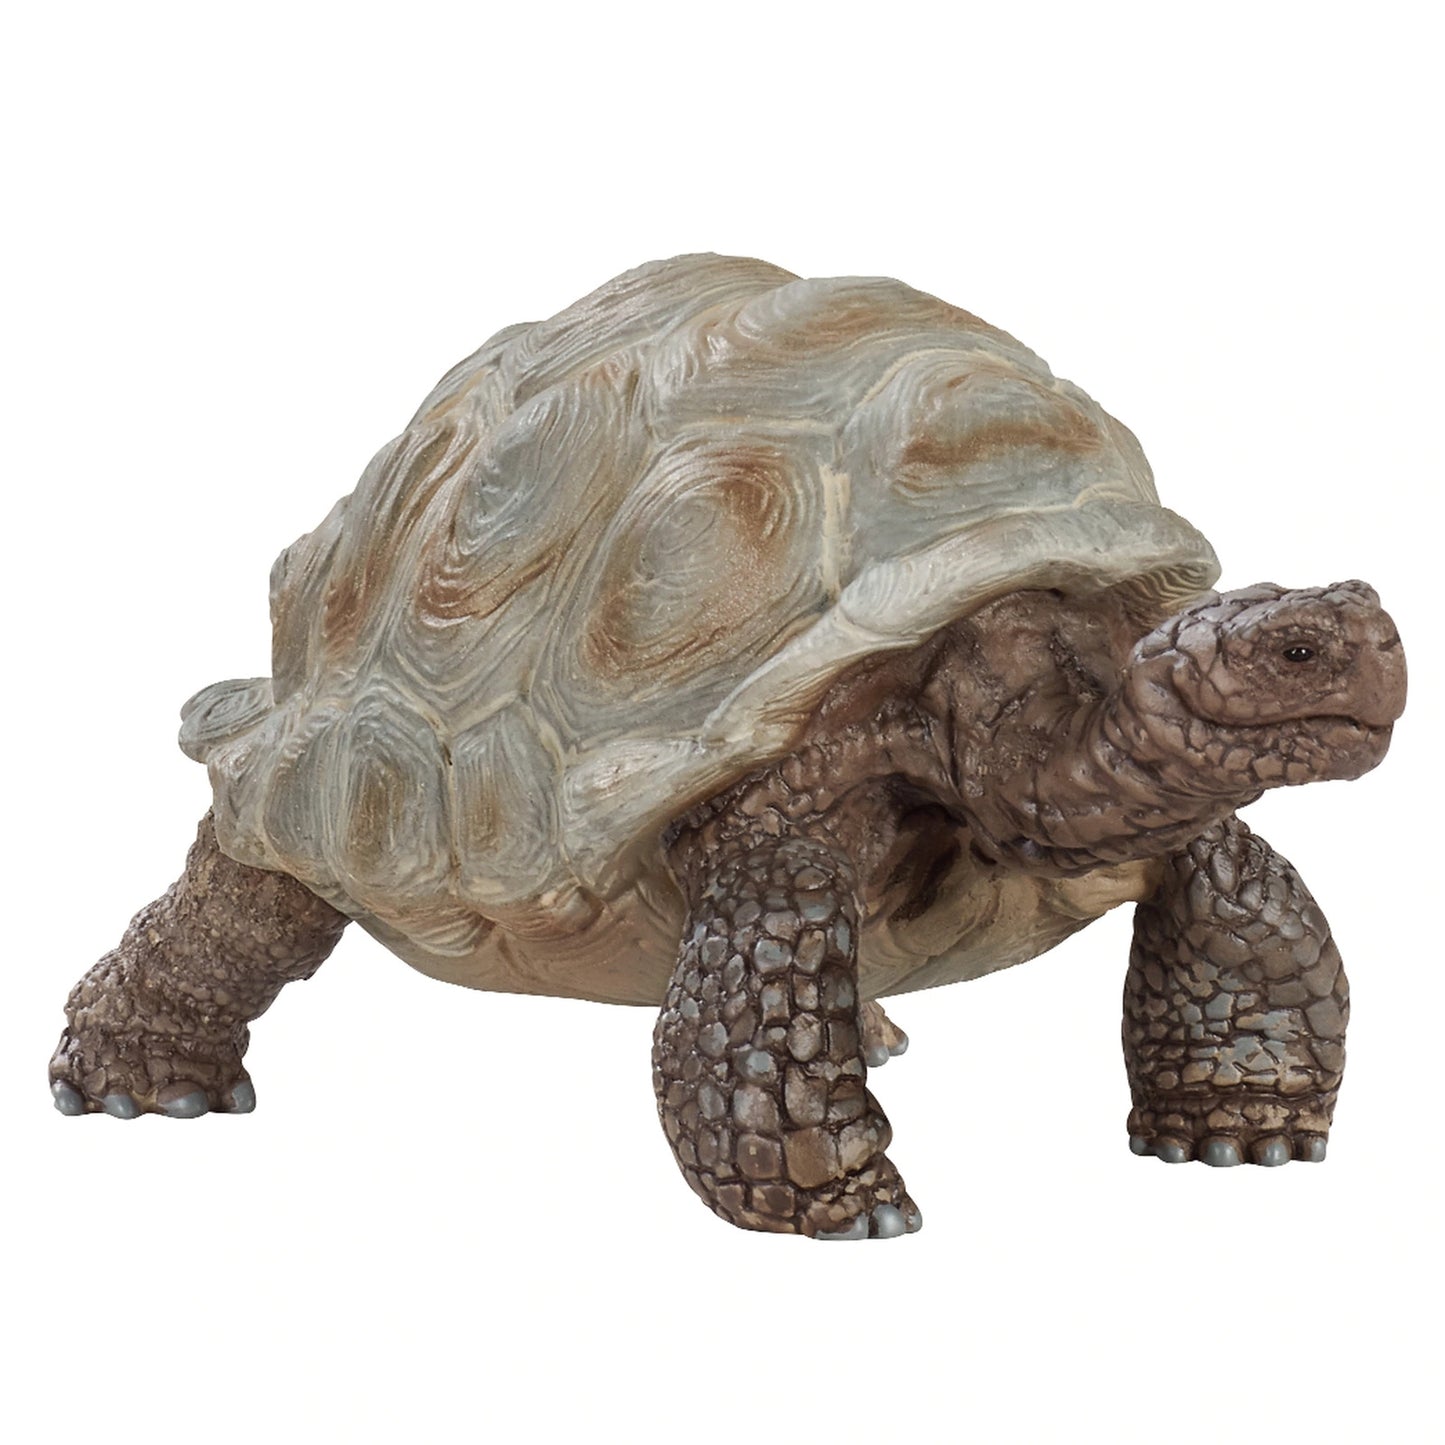 Schleich - Giant Tortoise